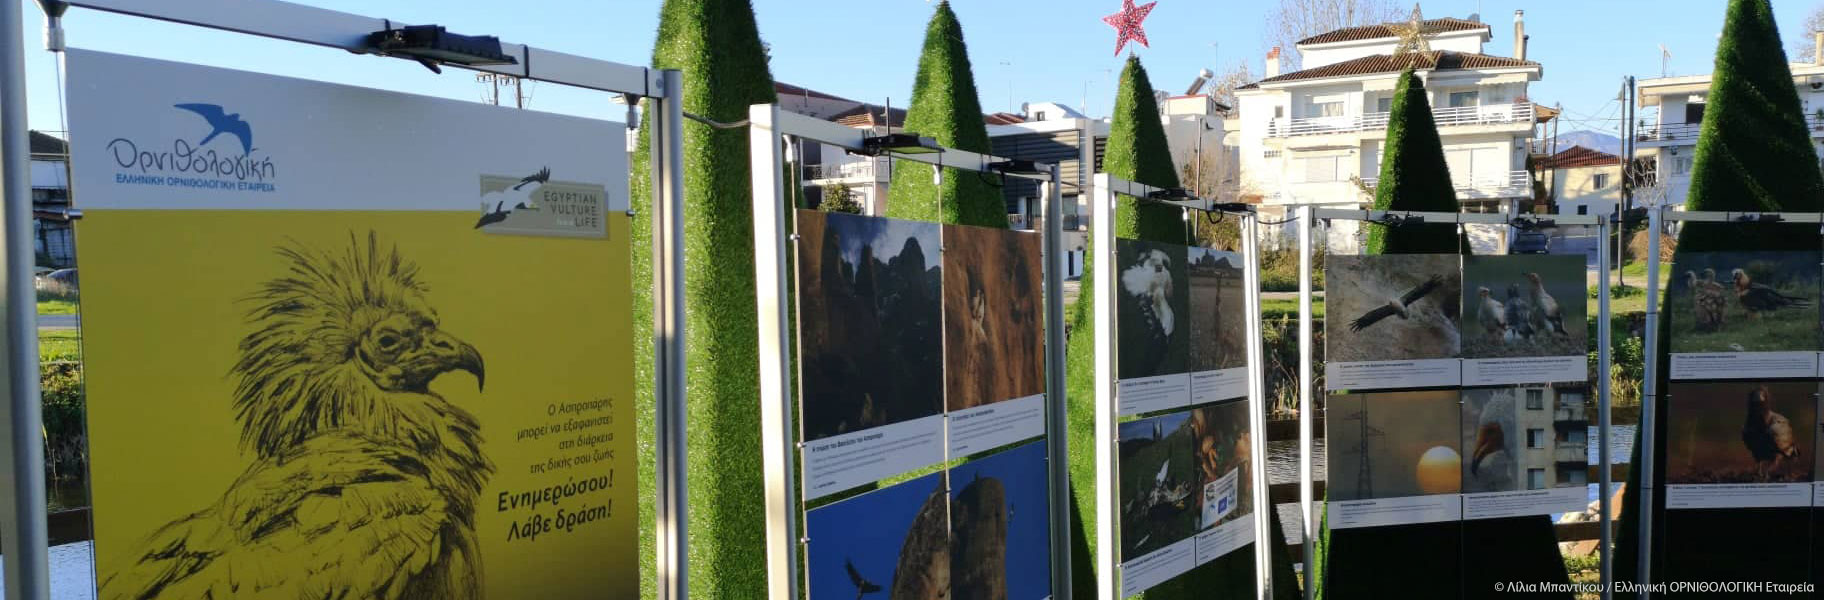 Ο Ασπροπάρης στο μεγαλύτερο χριστουγεννιάτικο θεματικό πάρκο της Ελλάδας